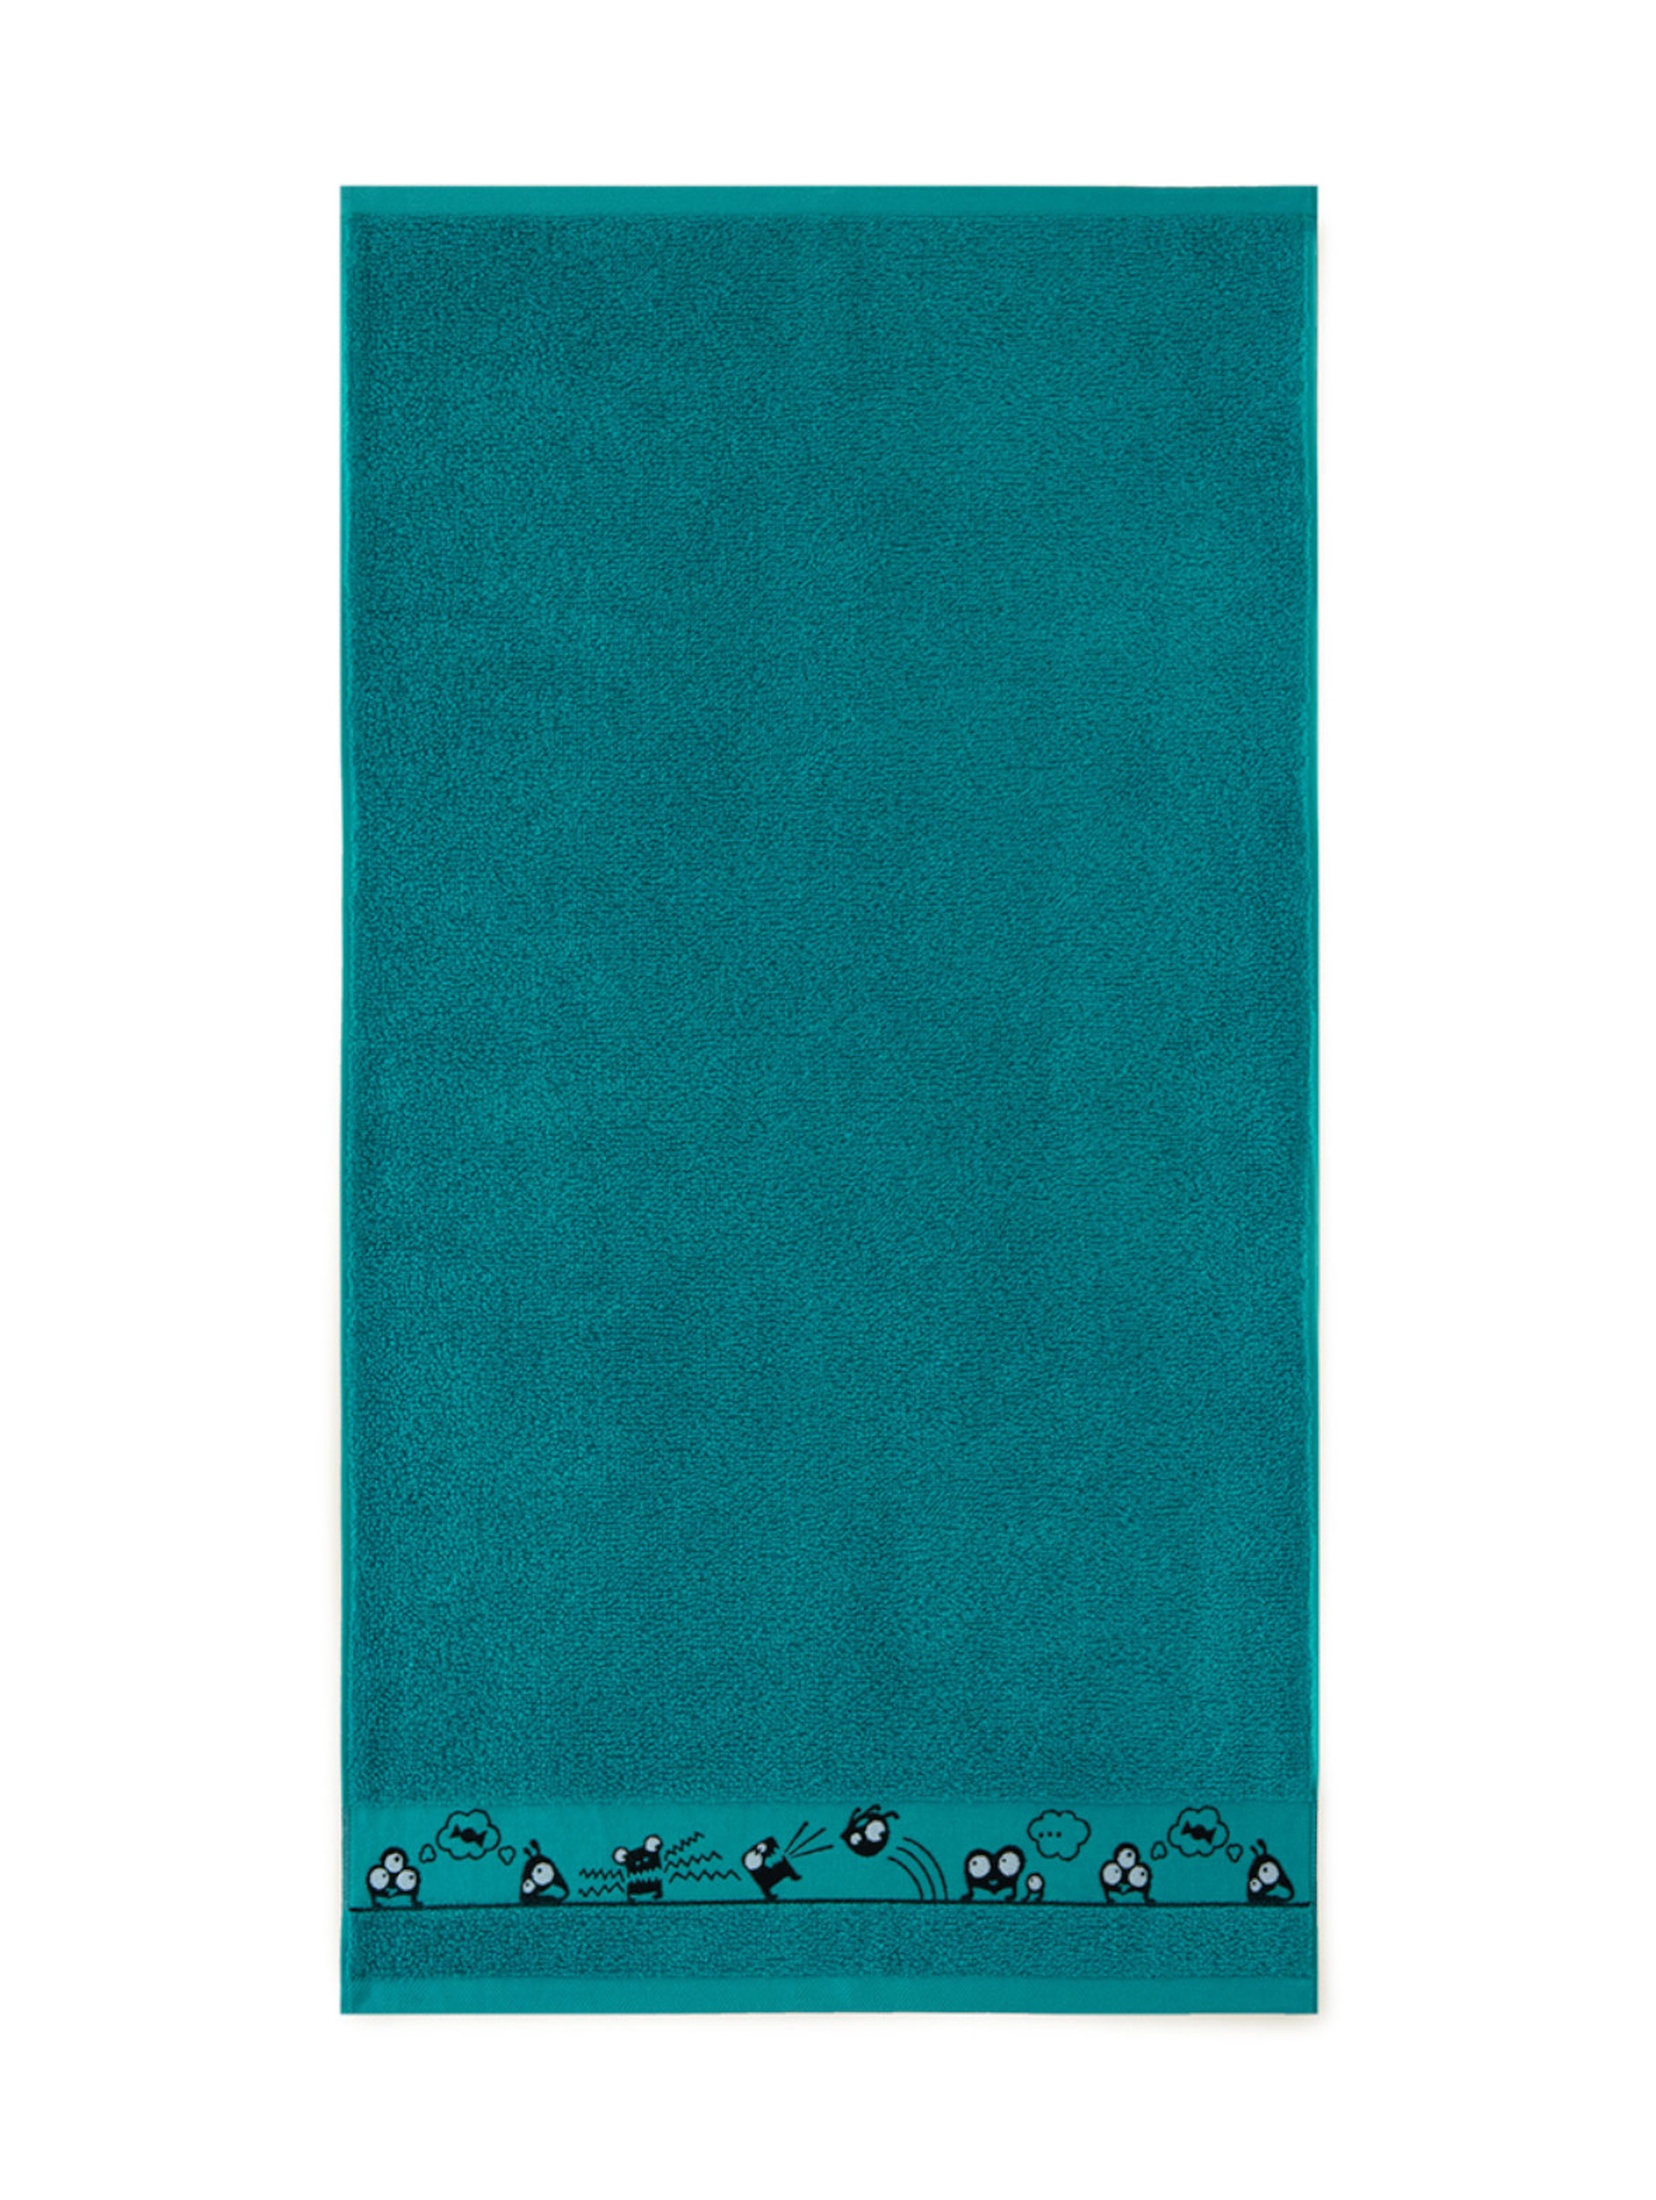 Ręcznik Oczaki z bawełny egipskiej zielony 70x130cm